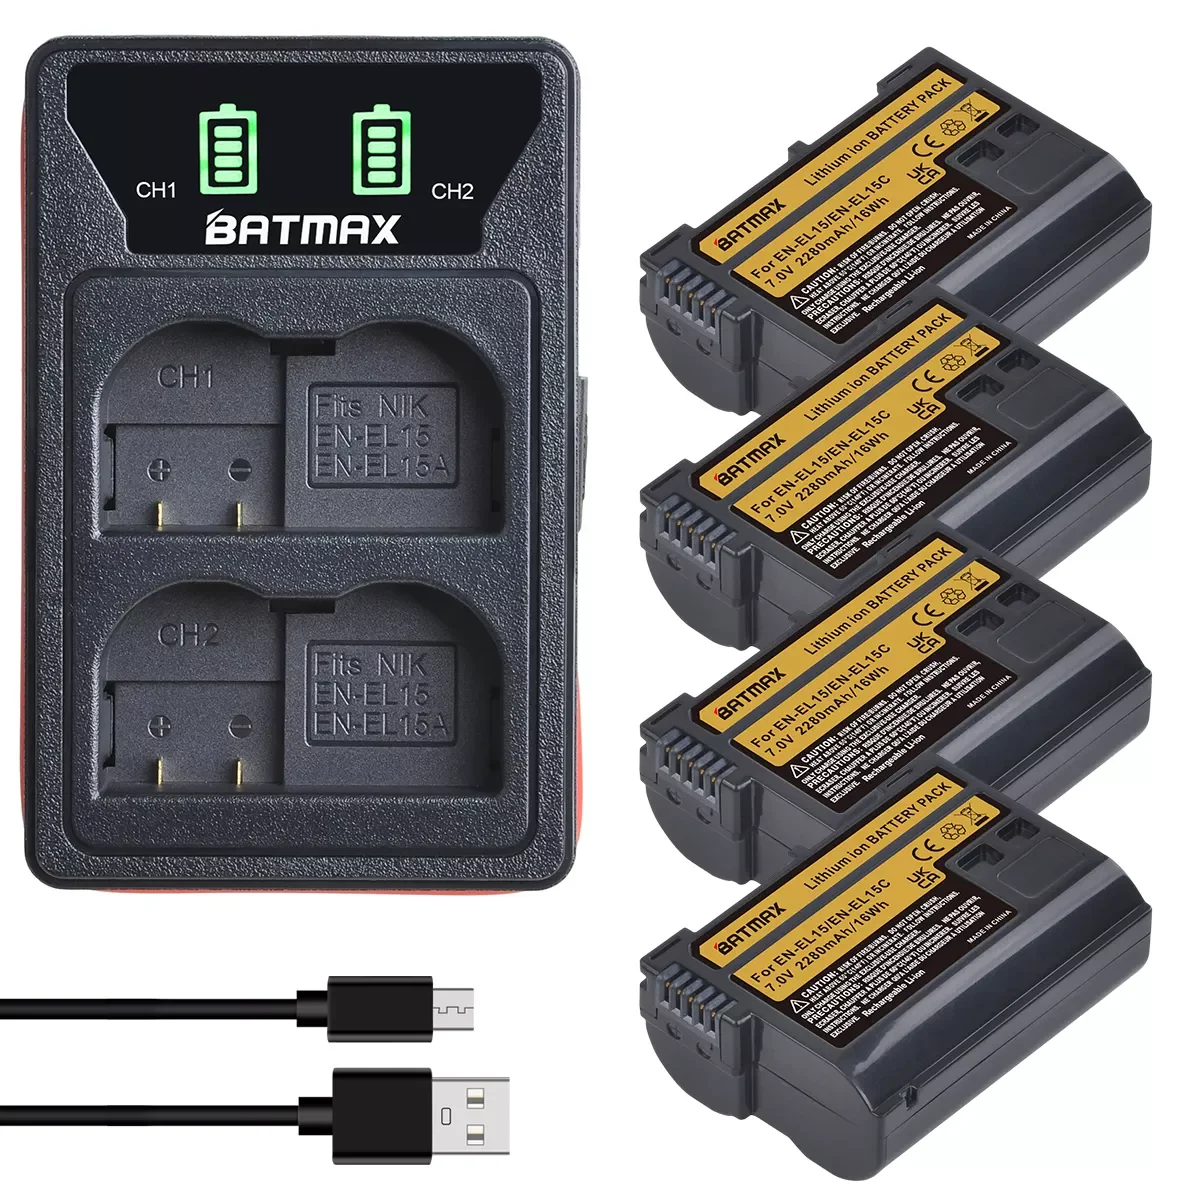 

NEW Batmax 2280mAh EN-EL15C EN-EL15 Battery+LED USB Dual Charger for Nikon Z5,Z6,Z6 II,Z7,Z7II D600 D610 D600E D800 D810 D800E D